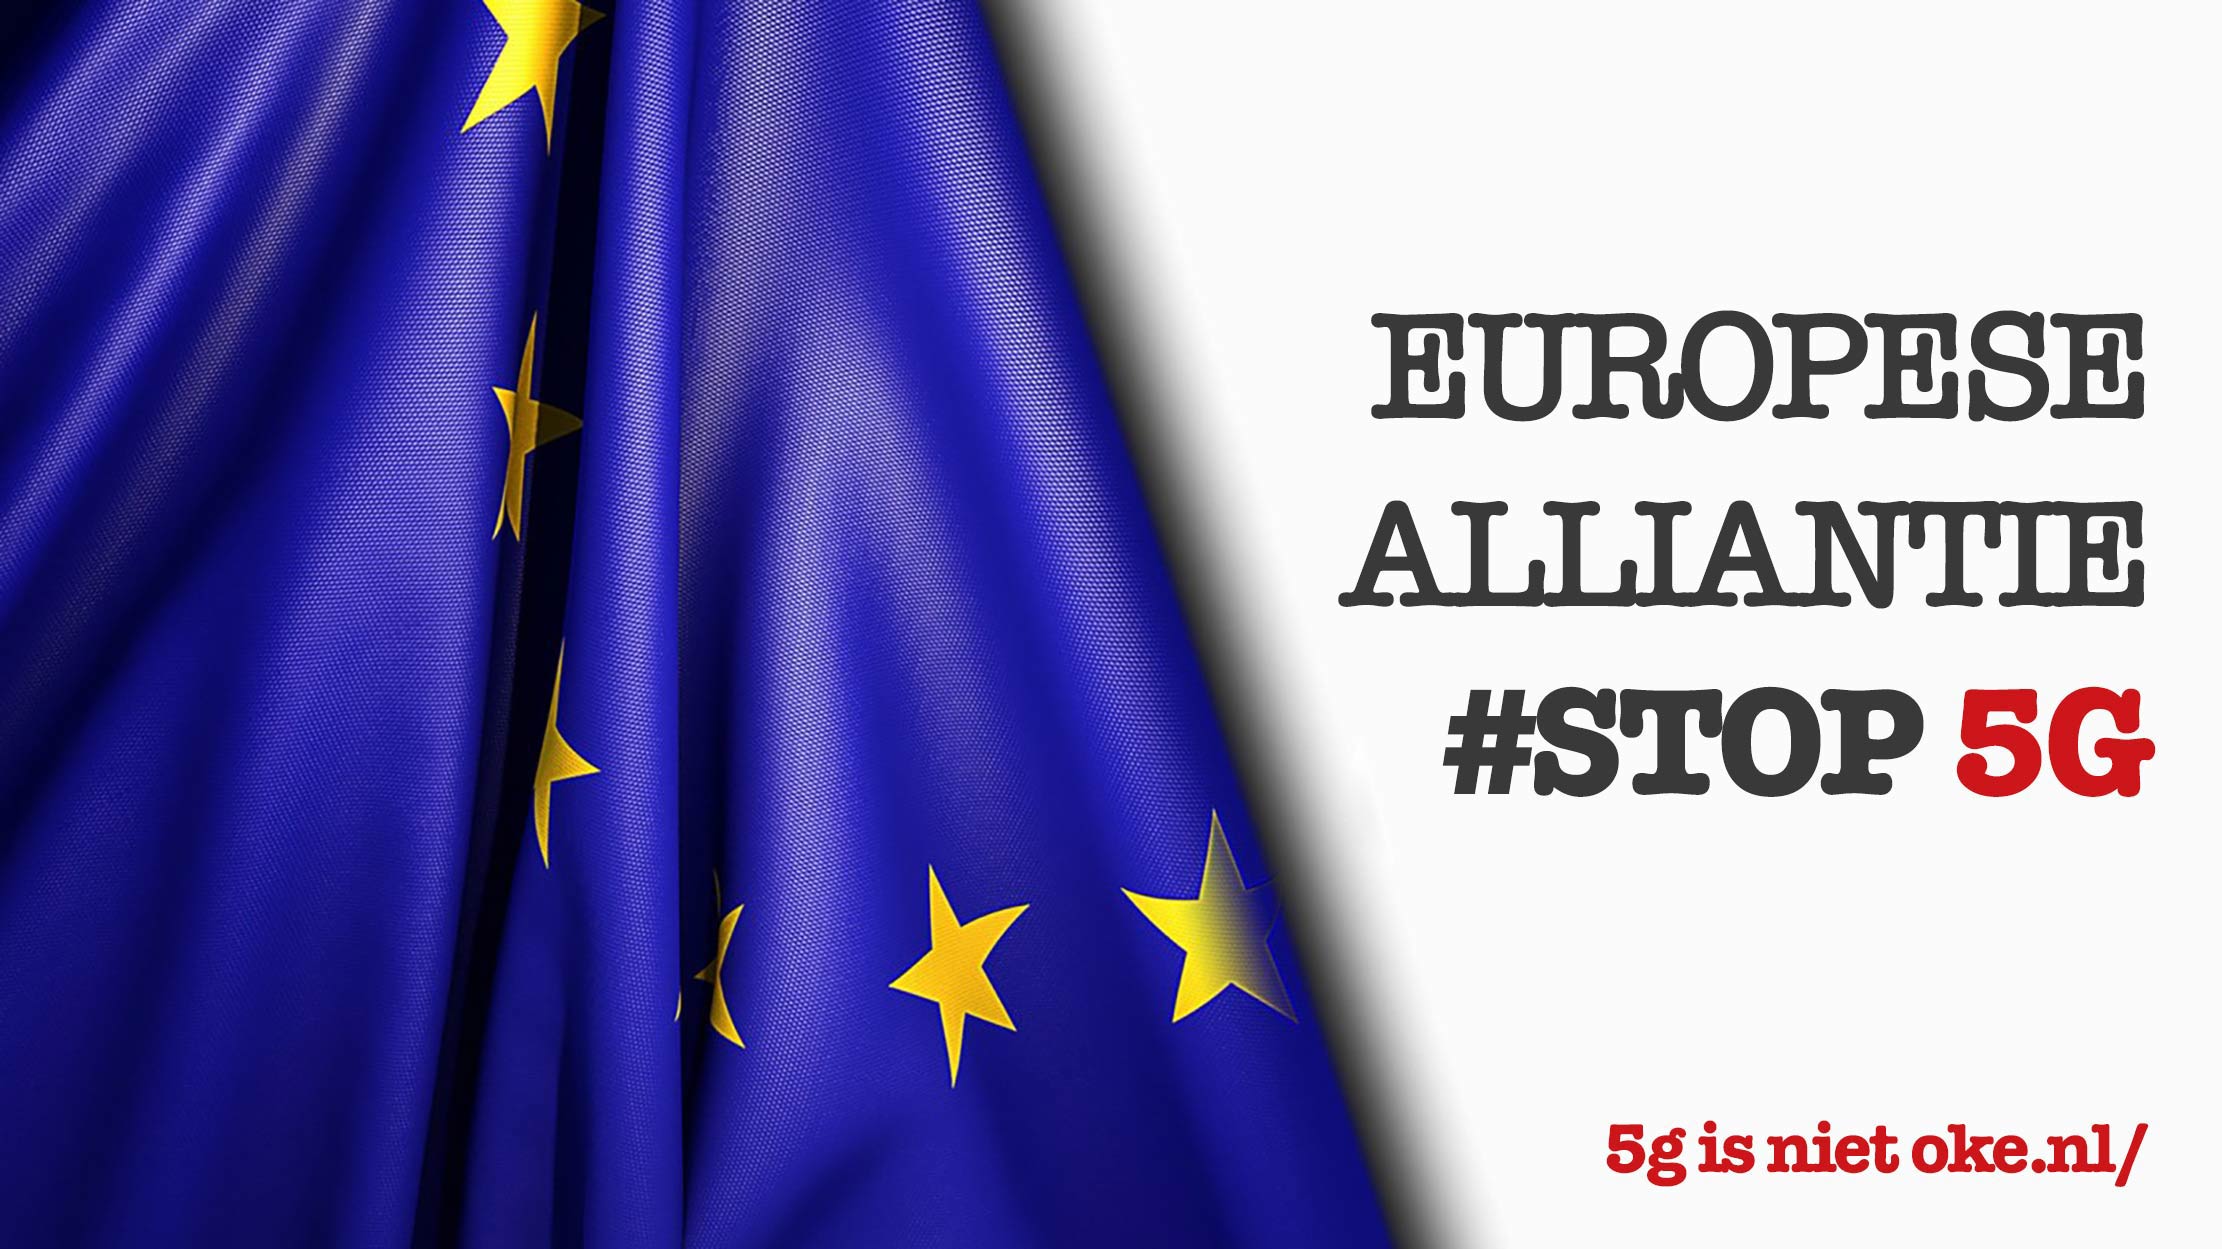 5G is niet oké | deel van de Europese Alliantie #STOP 5G